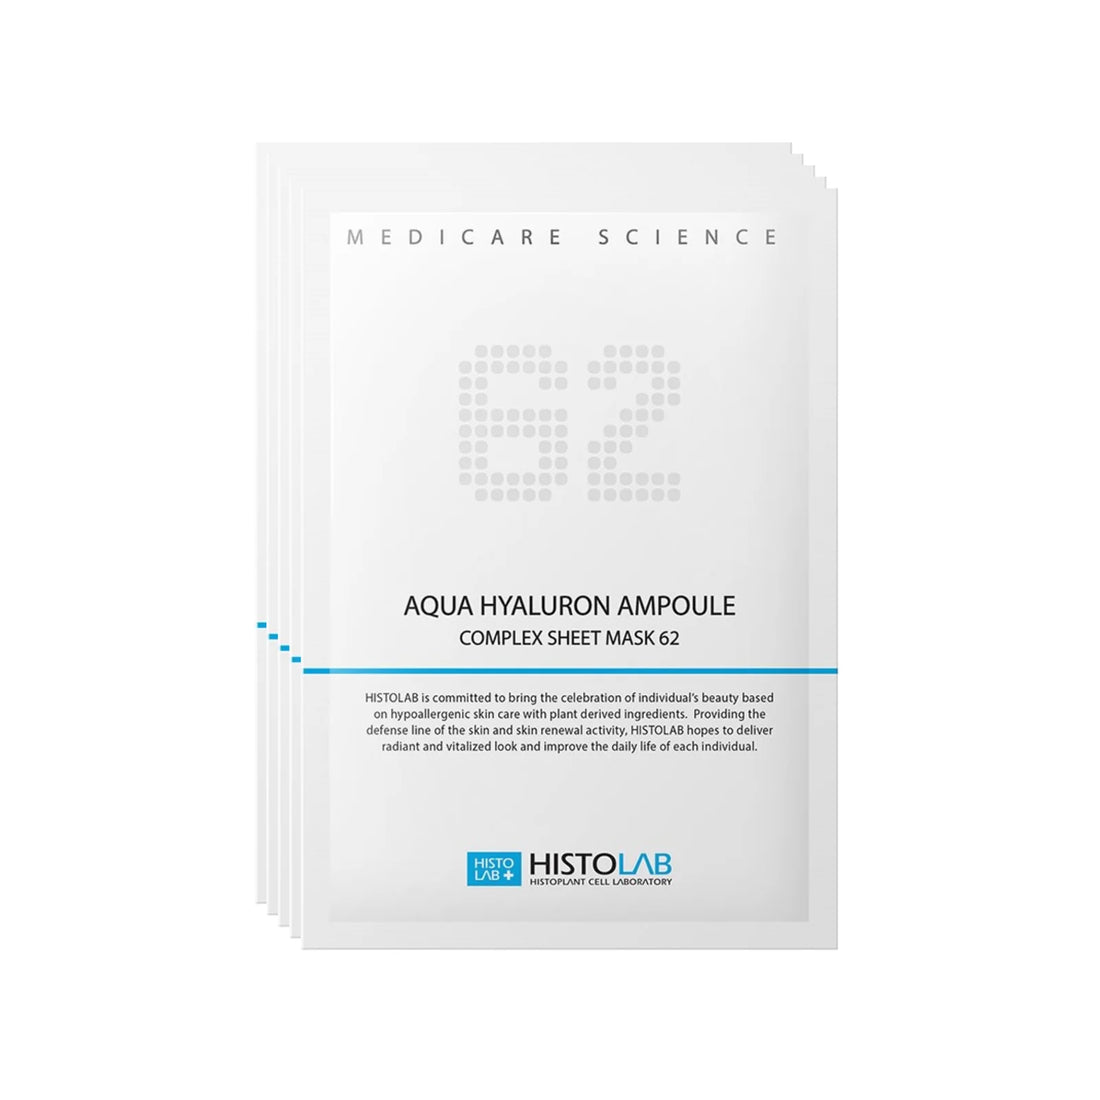 Aqua Hyaluron Ampoule Complex Sheet Mask 62 (5 Masks)